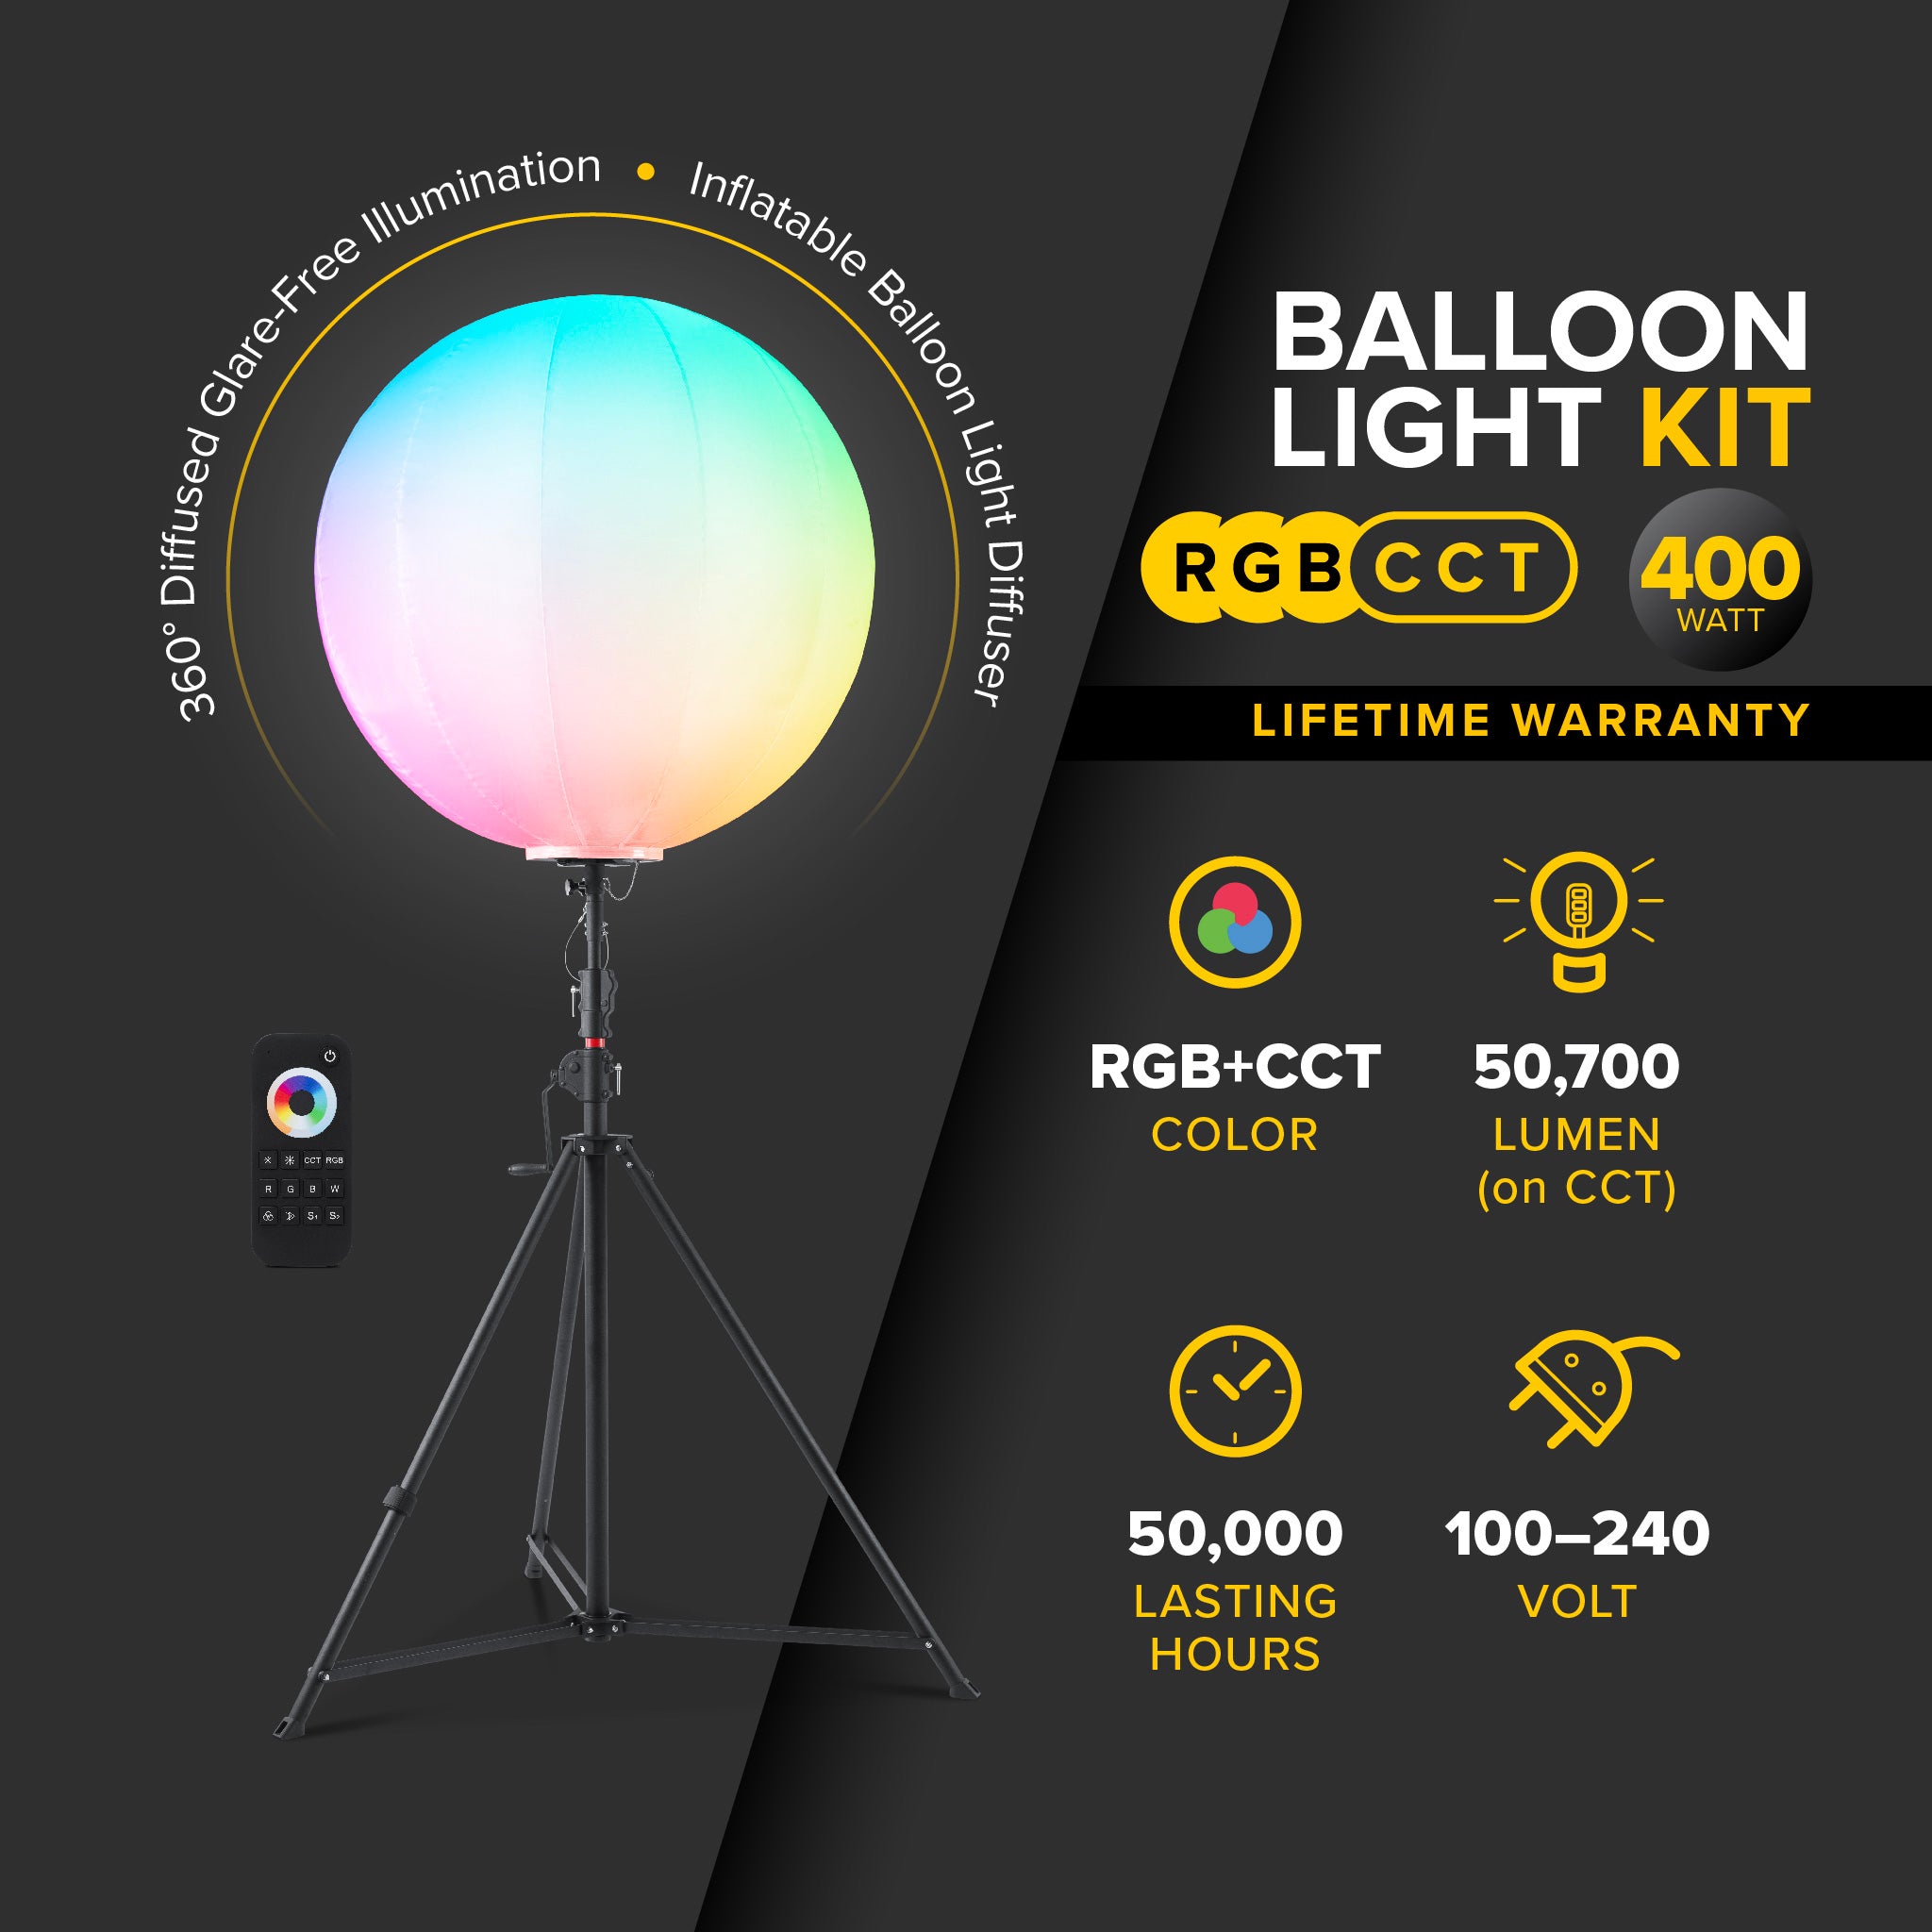 G3 - 400 Watt RGB + CCT LED Balloon Light Kit